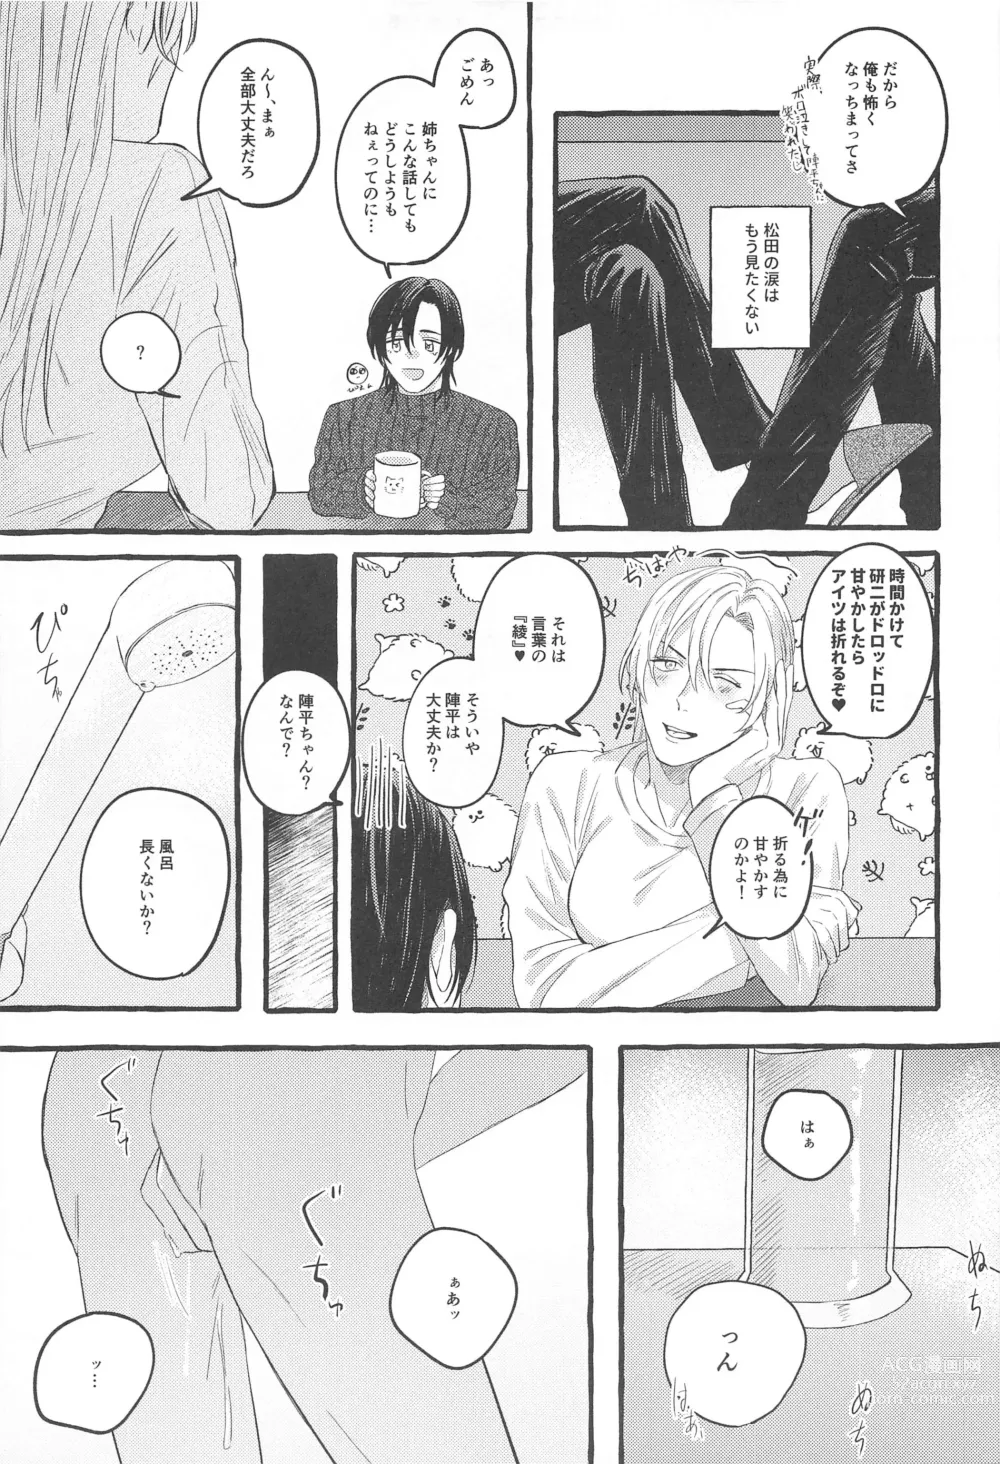 Page 14 of doujinshi Ore wa Koitsu ni Yowai